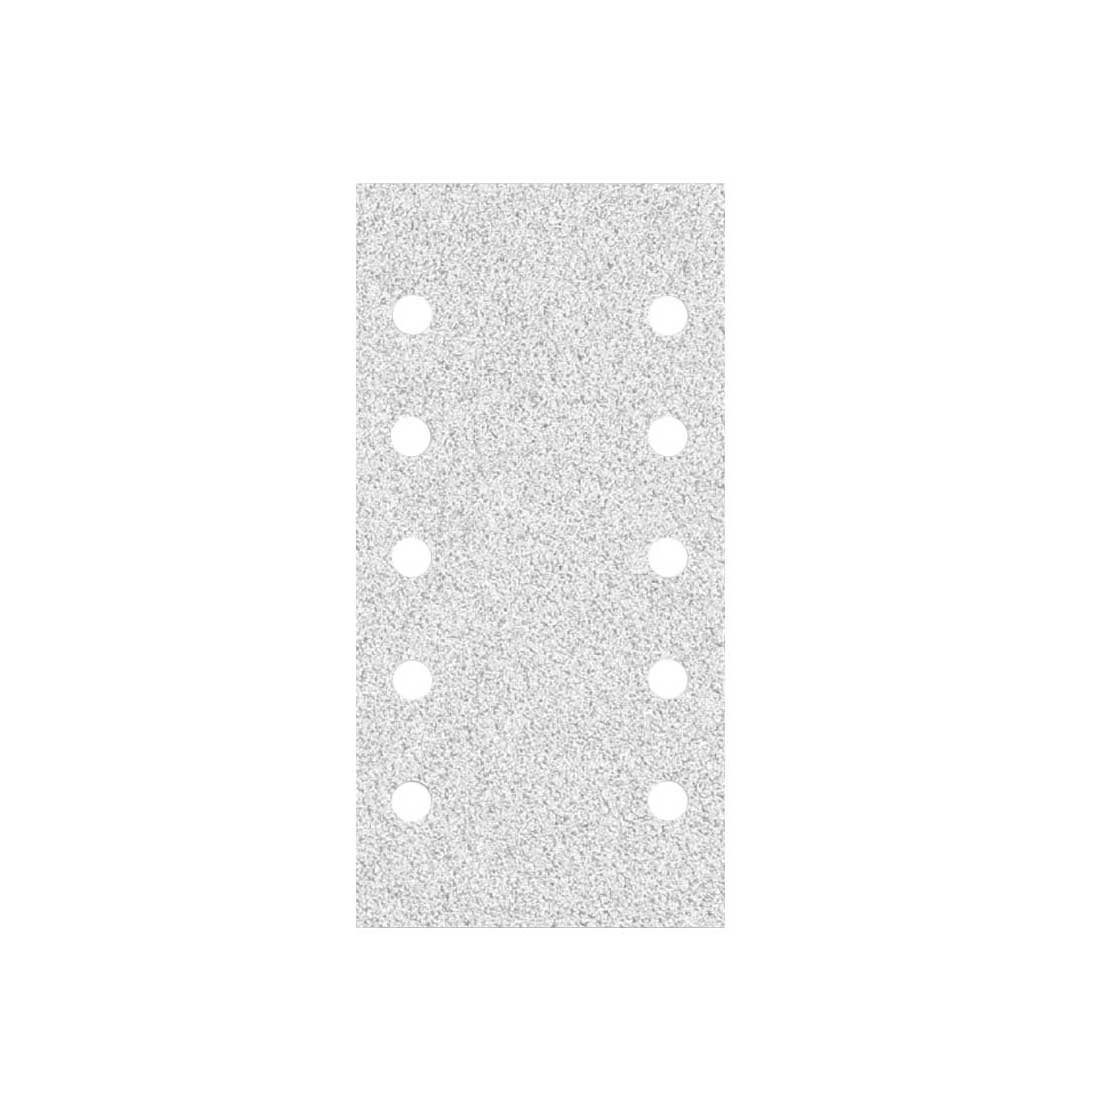 MioTools Schleifpapier 230 x 115 mm 10-Loch Klett-Schleifblätter für Schwingschleifer, Normalkorund, 50 Stk., K100